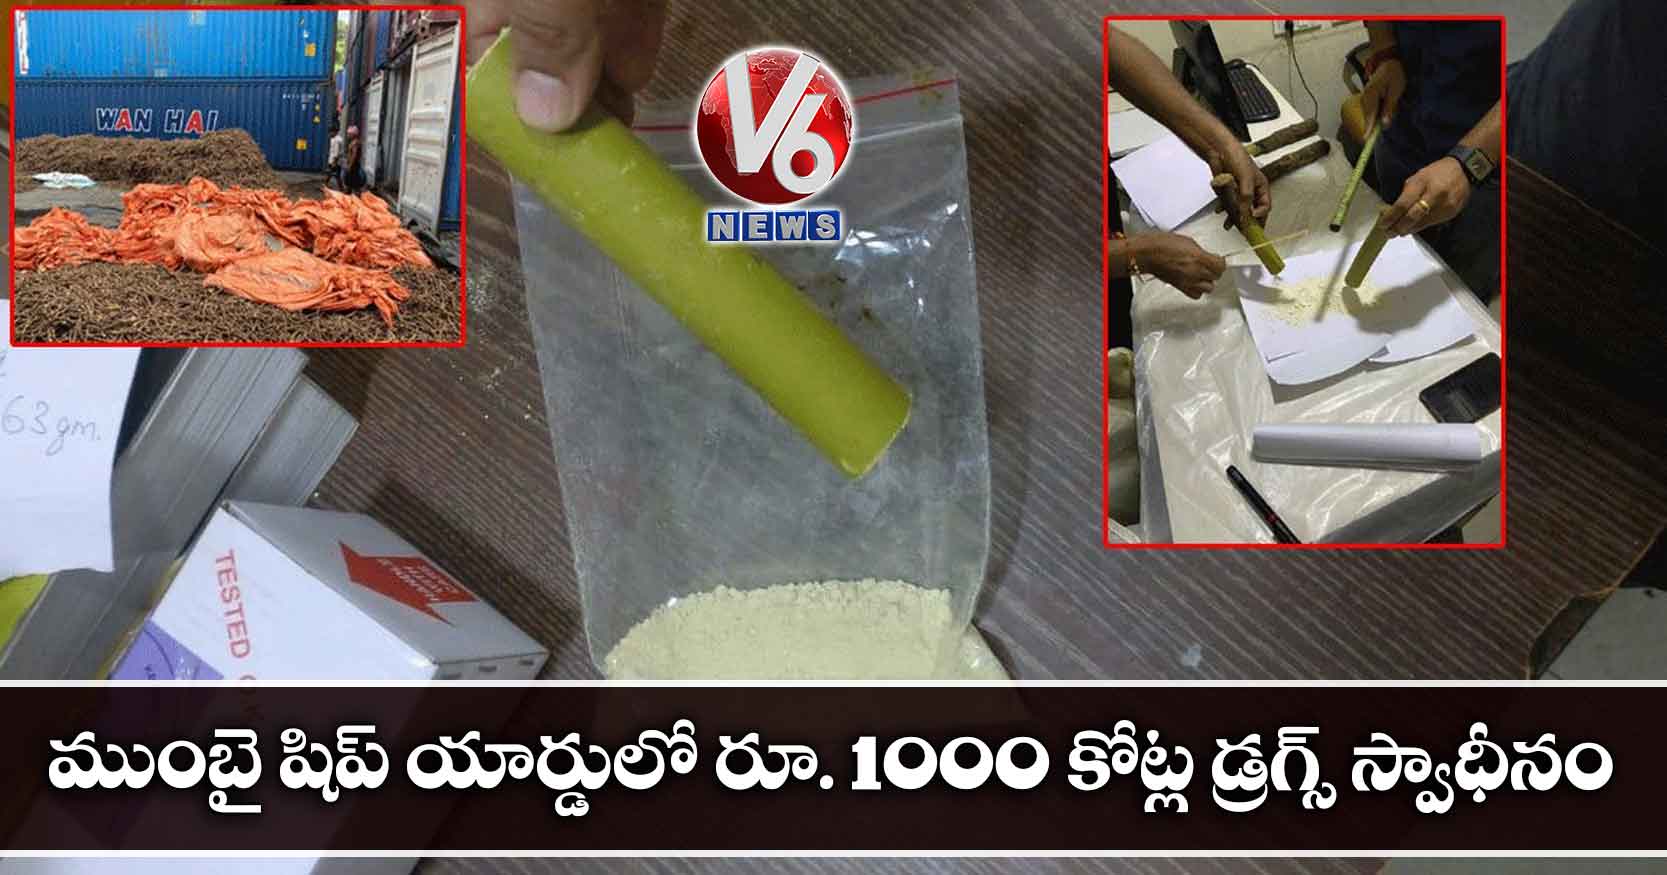 ముంబై షిప్ యార్డులో రూ. 1000 కోట్ల డ్రగ్స్ స్వాధీనం